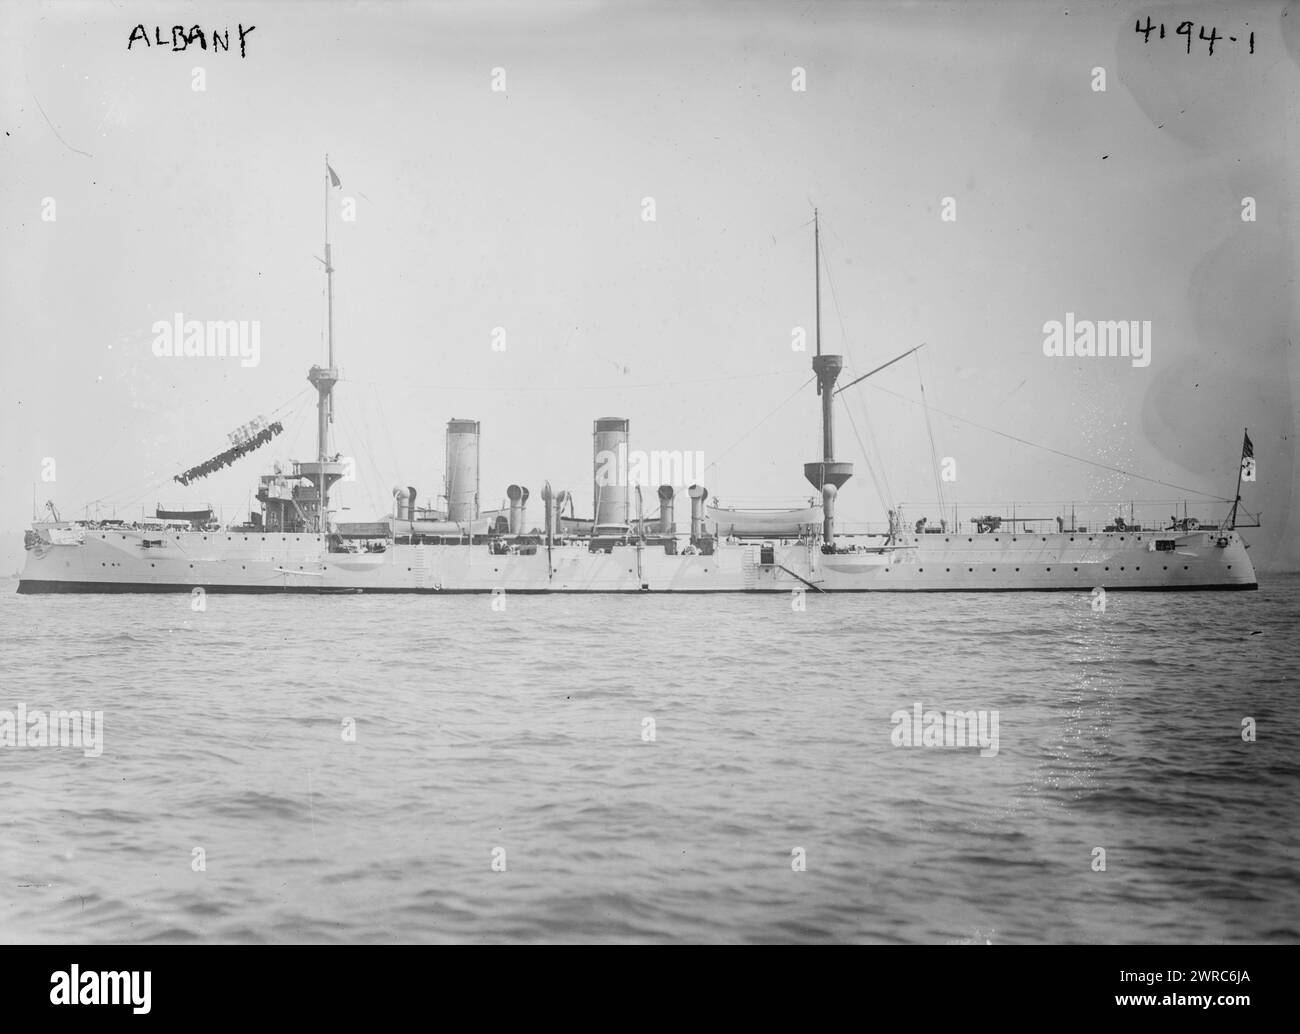 ALBANY, la fotografia mostra la USS Albany (CL-23), un incrociatore protetto della Marina degli Stati Uniti., tra ca. 1915 e ca. 1920, Glass negative, 1 negativo: Glass Foto Stock